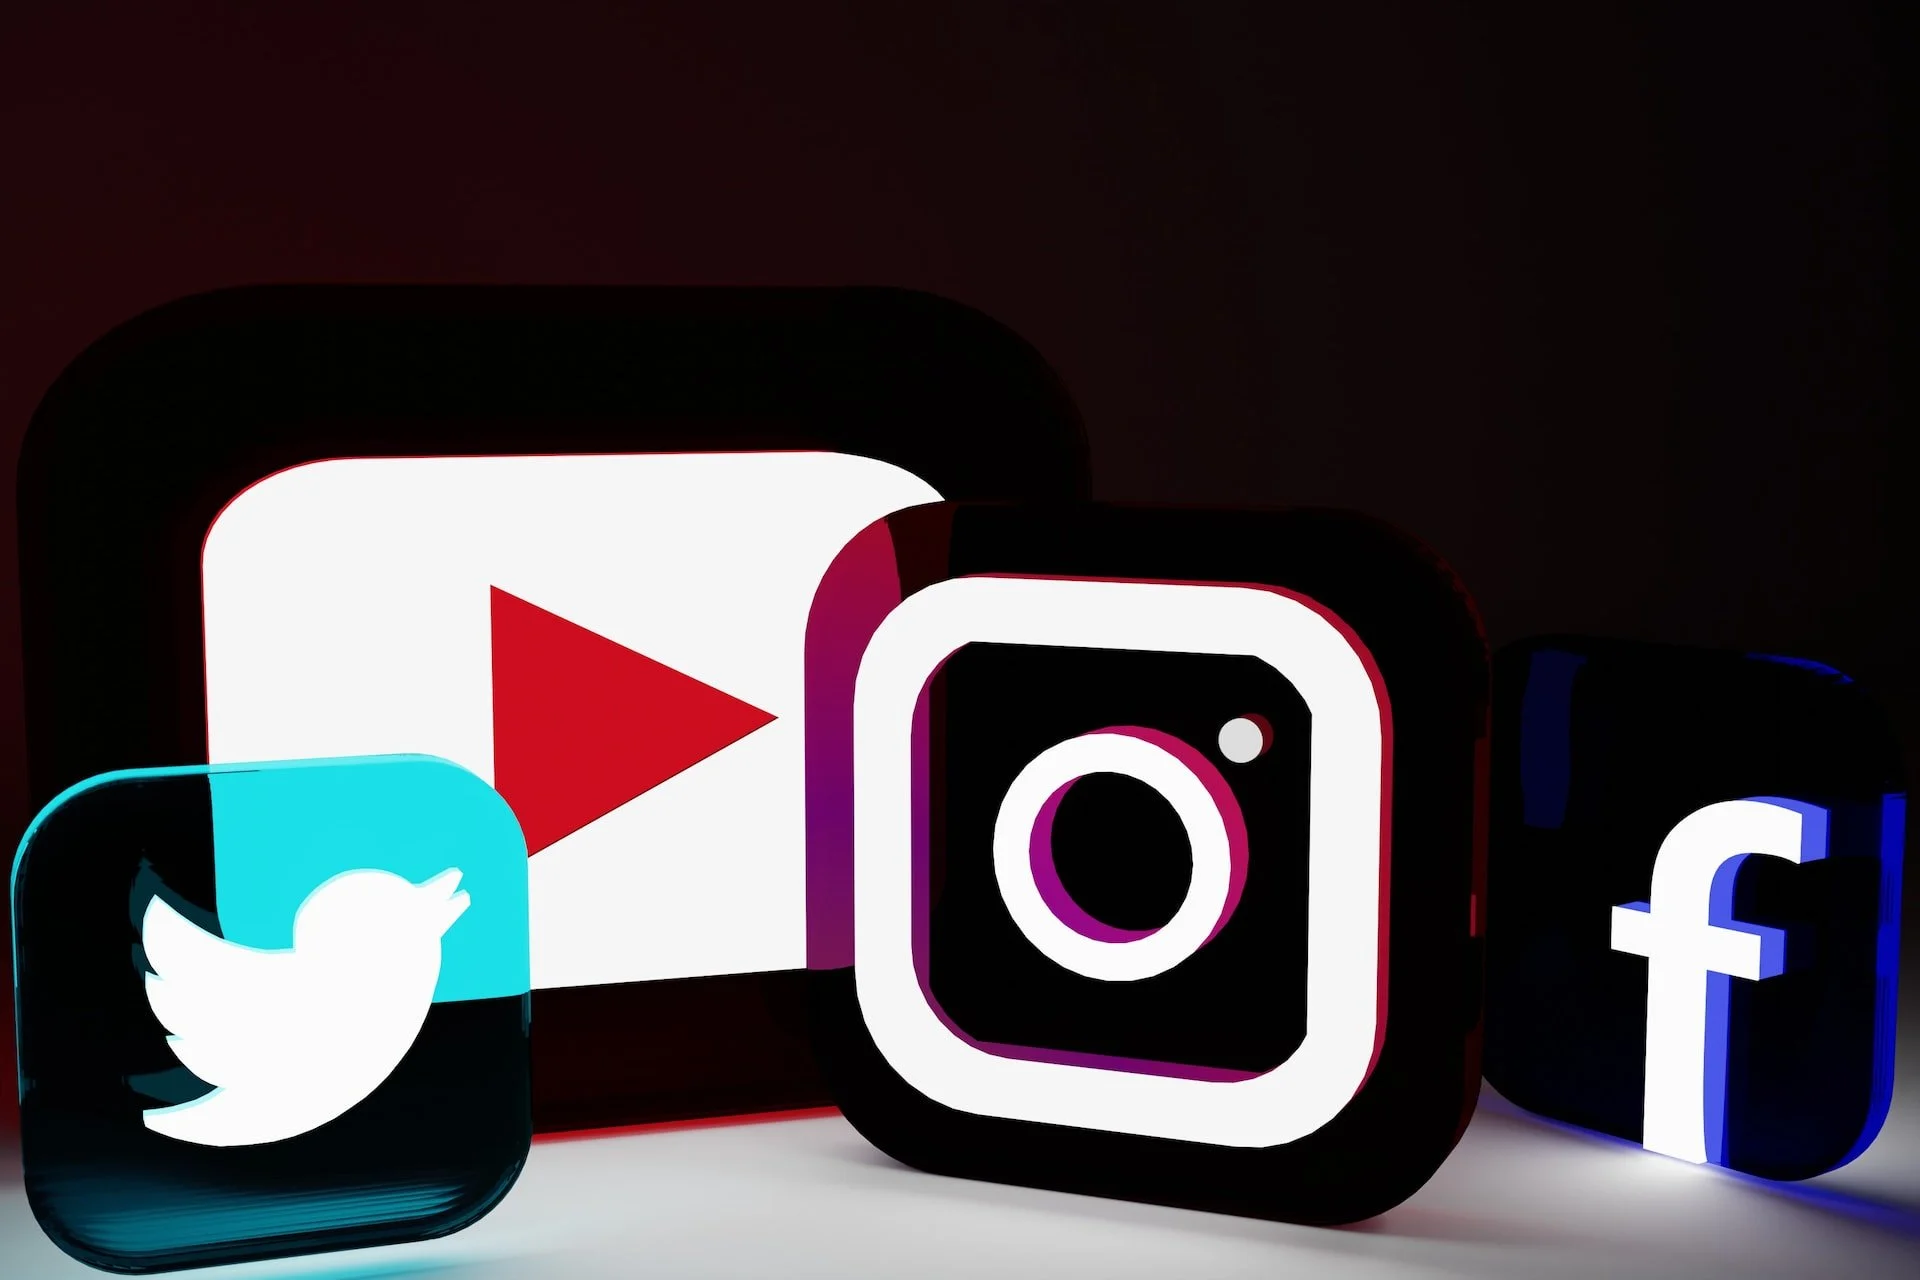 plataformas de redes sociales Twitter, YouTube, Instagram y logotipos transparentes y con luces de neón de Facebook